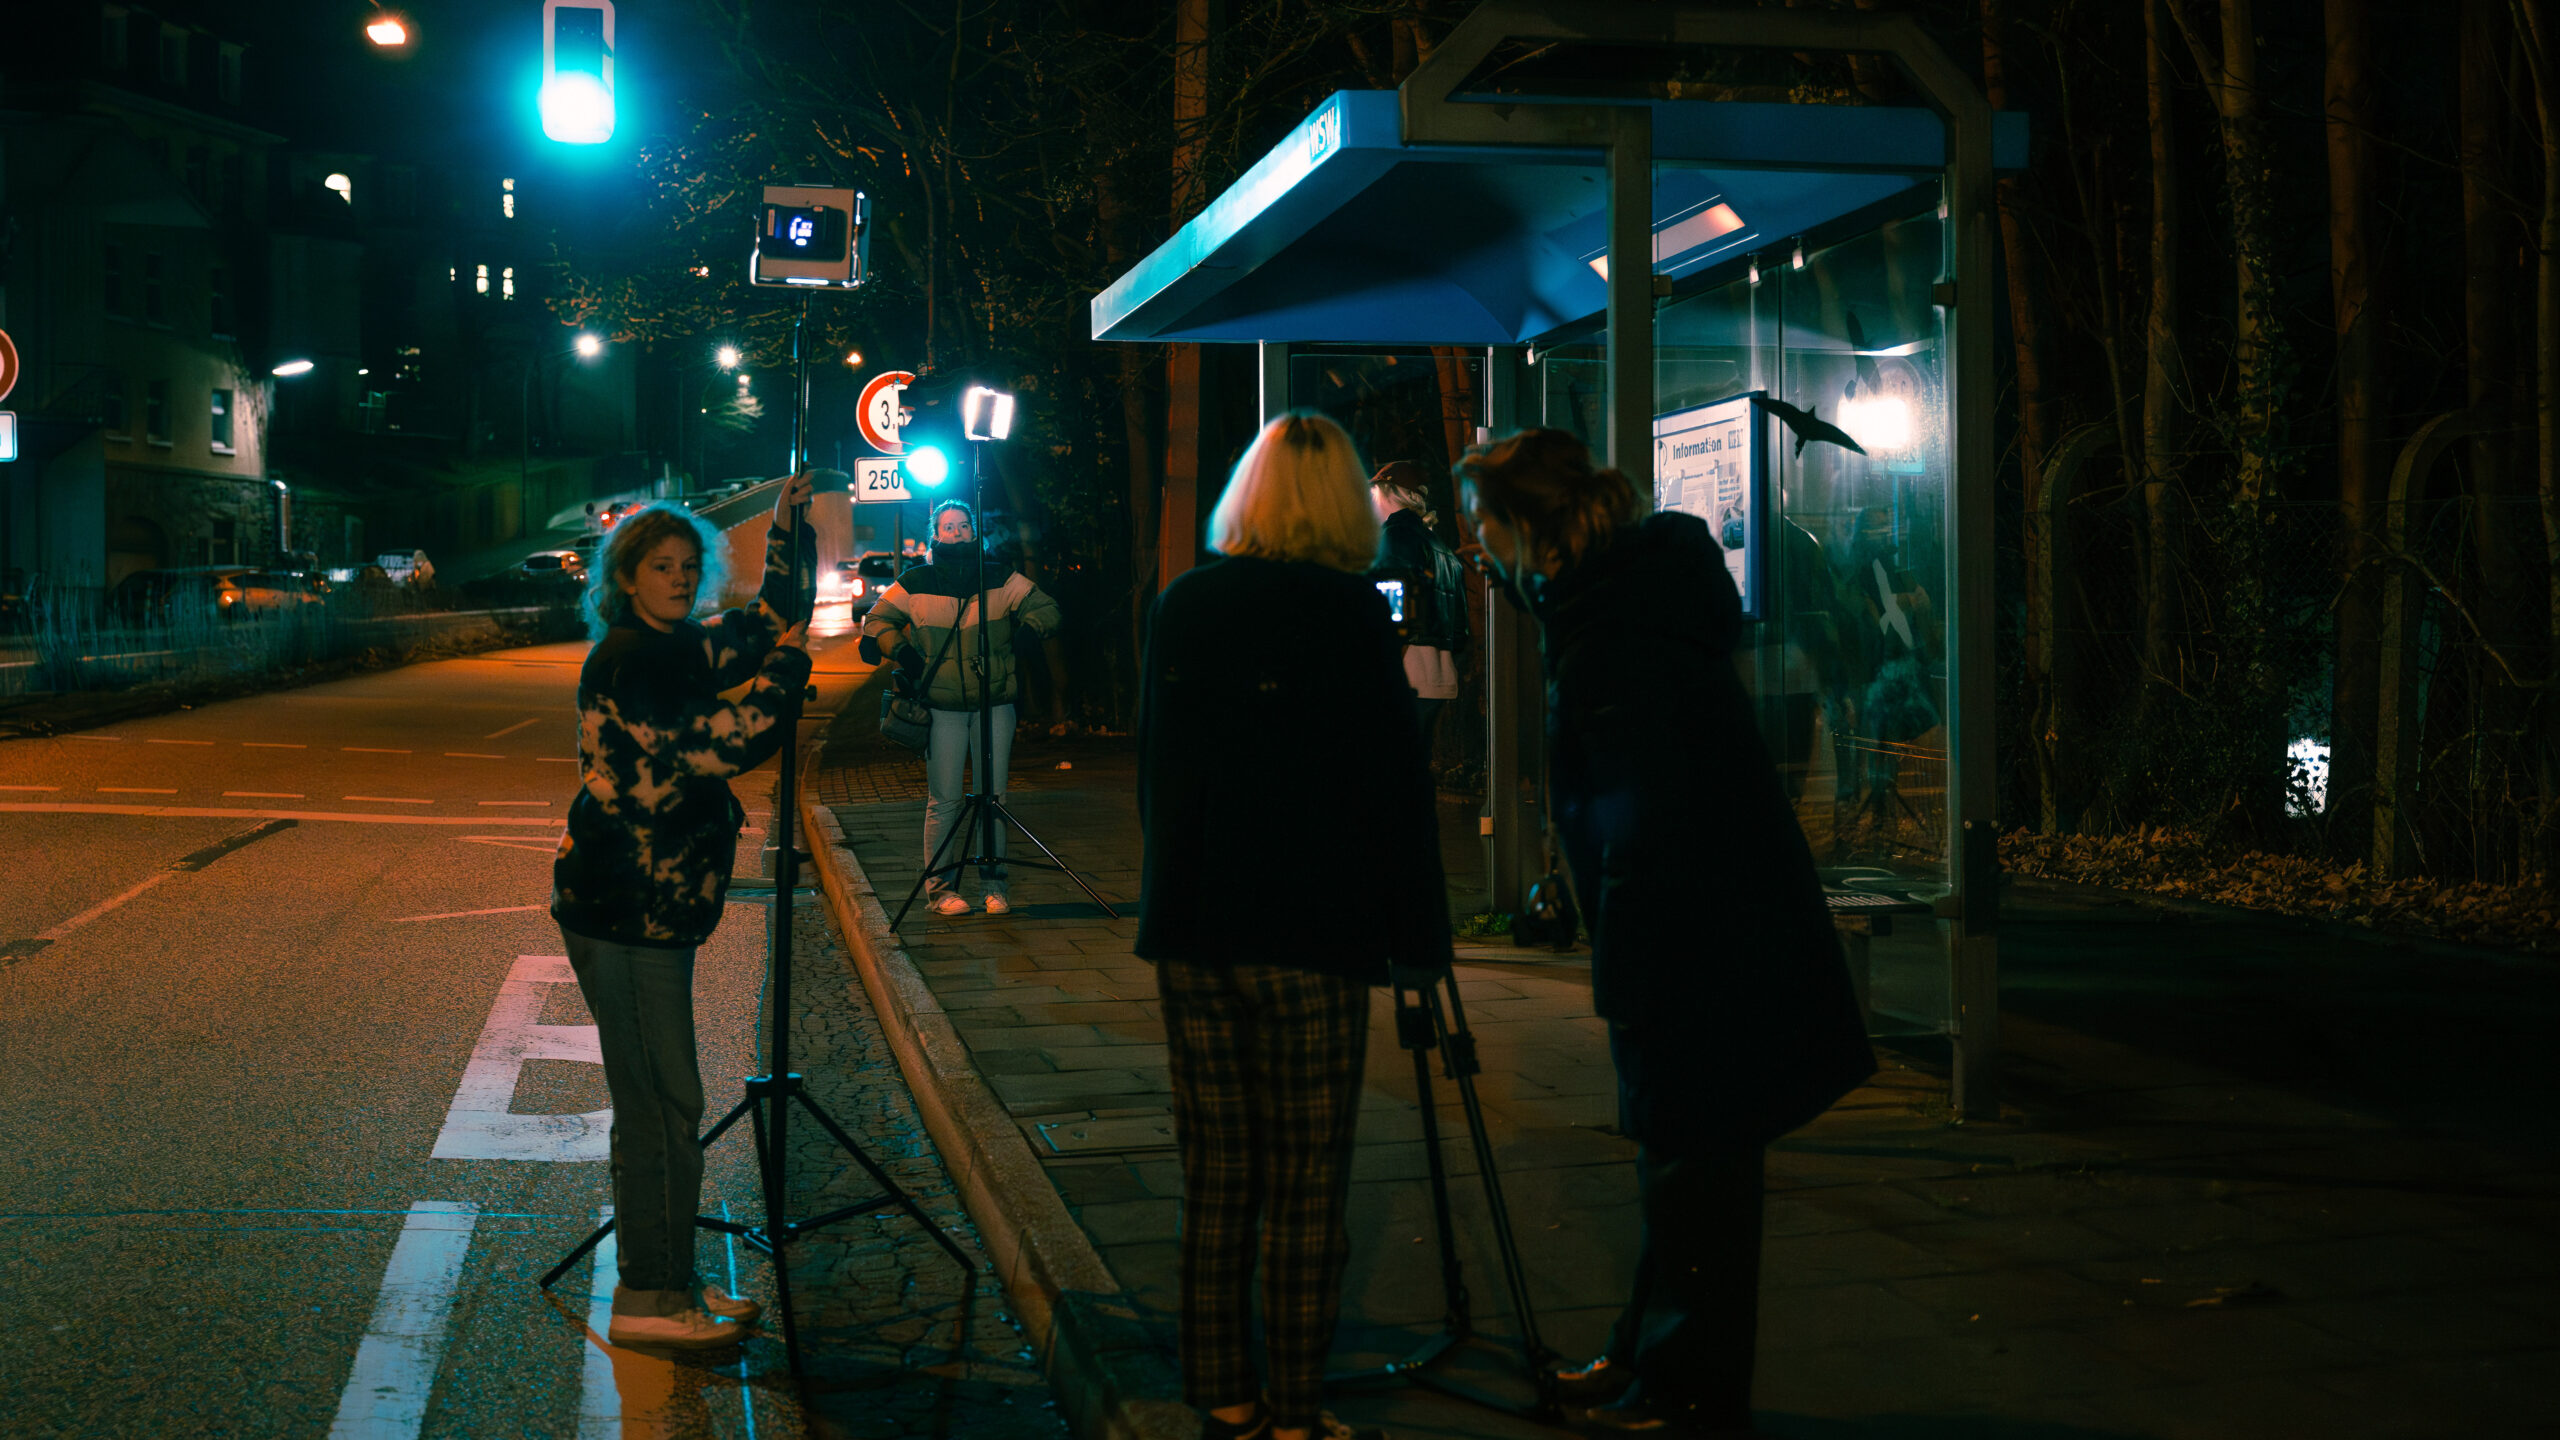 Eine situative Aufnahme hinter den Kulissen eines Filmdrehs an einer nächtlichen Bushaltestelle. Zwei Personen stehen an zwei Lichtpanels, zwei weitere Frauen an einer Stativkamera.